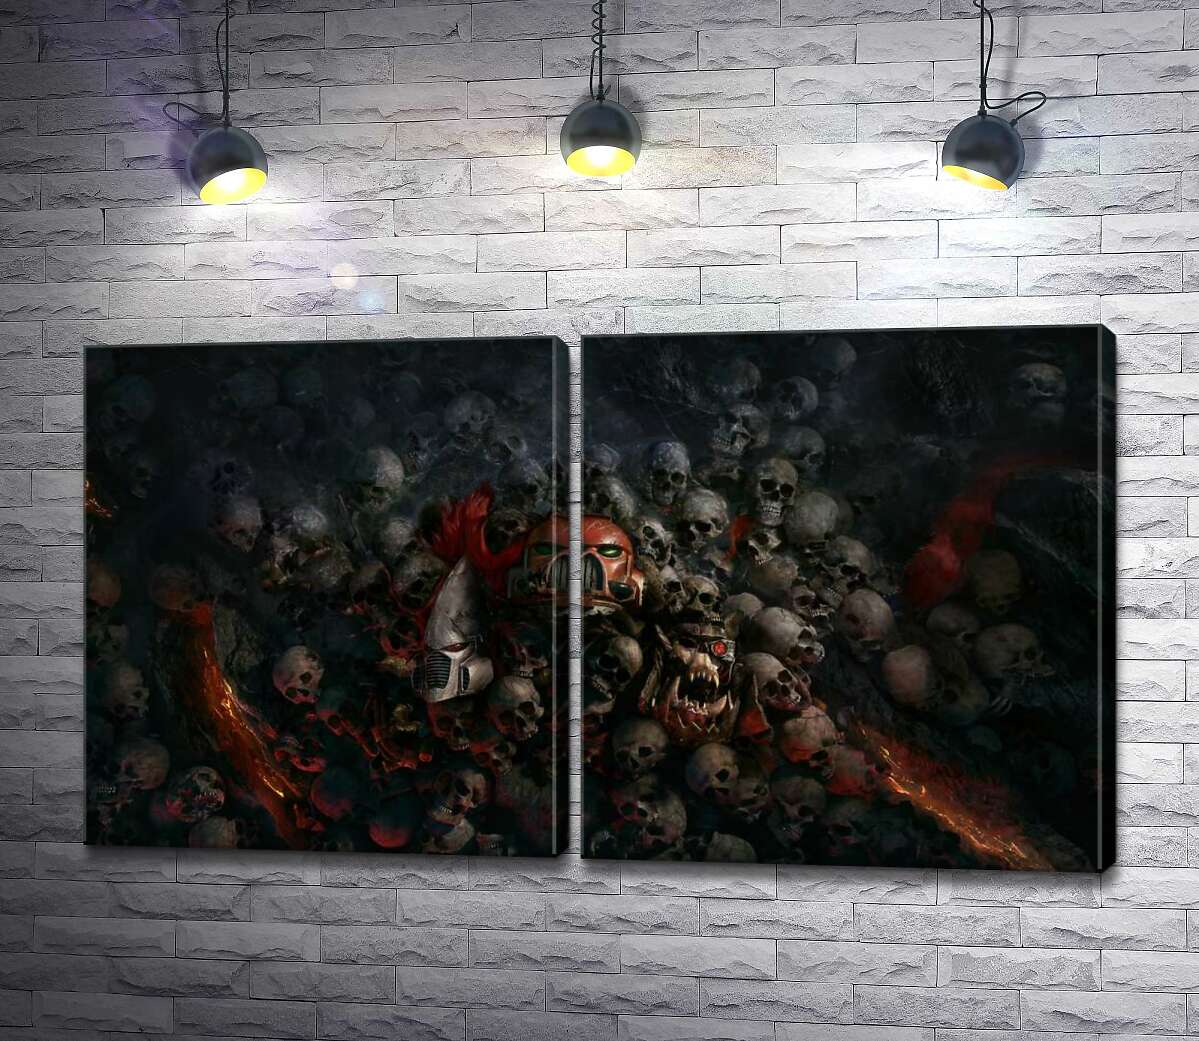 модульная картина Черепа проигравших роботов и людей на постере к видеоигре "Warhammer 40,000: Рассвет Войны" (Warhammer 40,000: Dawn of War)